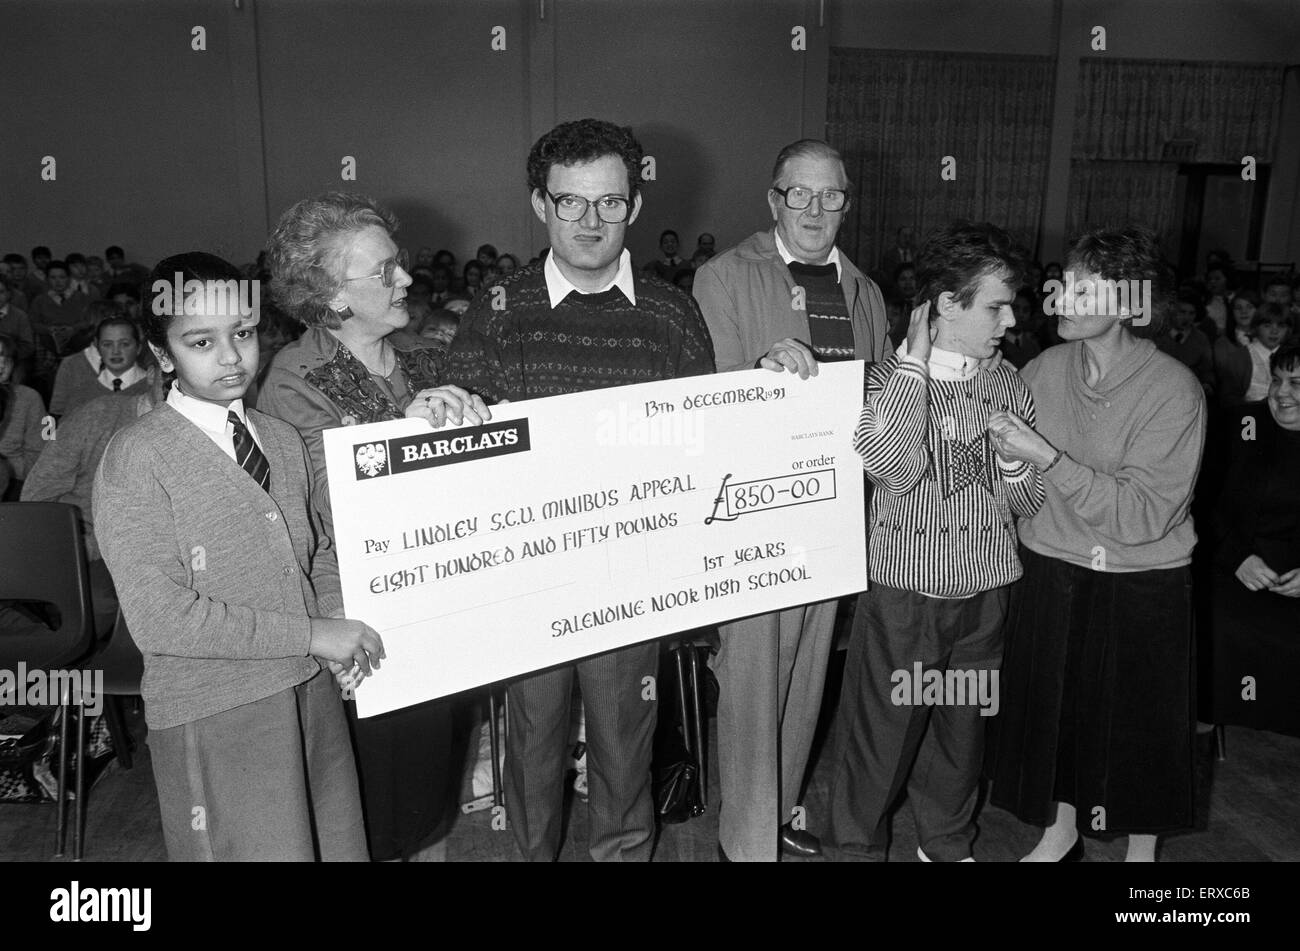 Salendine Nook di alta scuola sollevato £850 in una nuotata sponsorizzato per un minibus appello da Lindley speciale unità di cura. Il 13 dicembre 1991. Foto Stock